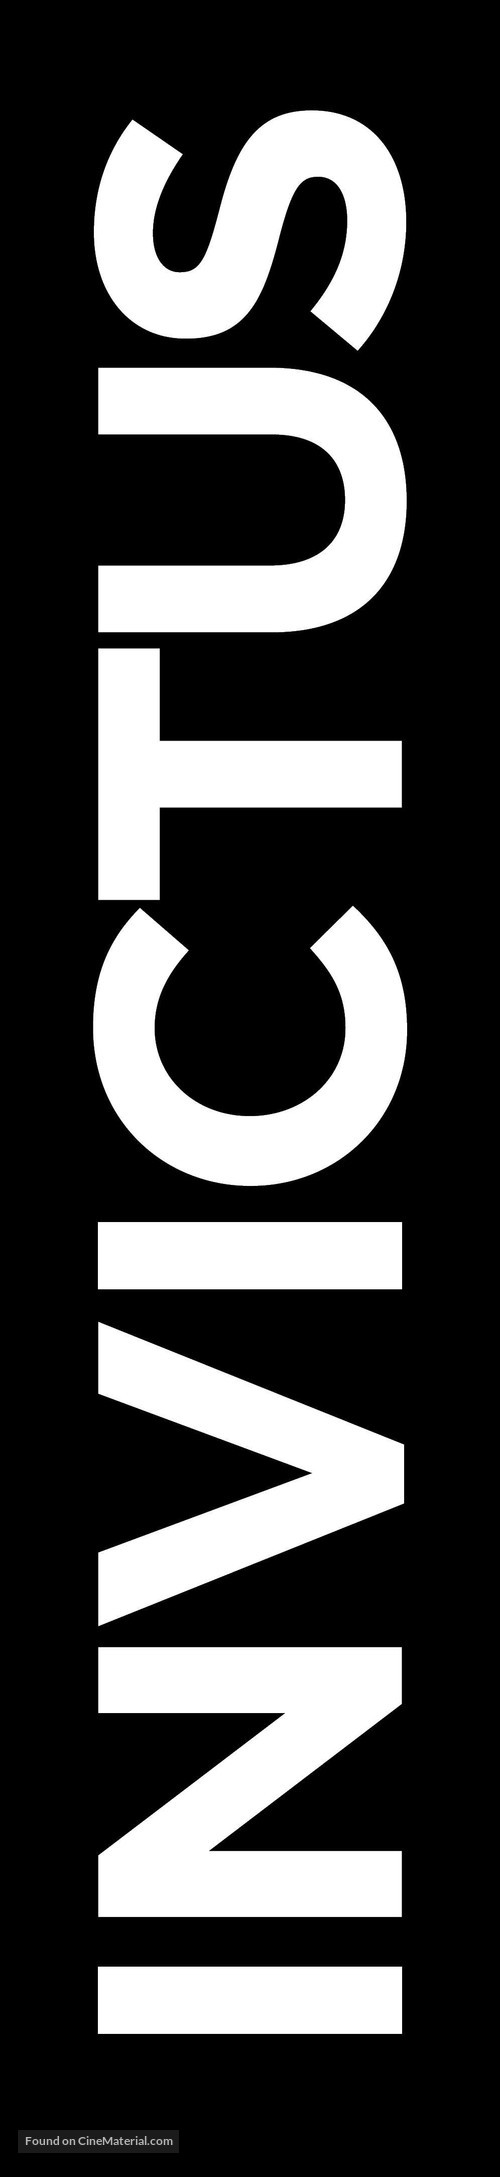 Invictus - Logo